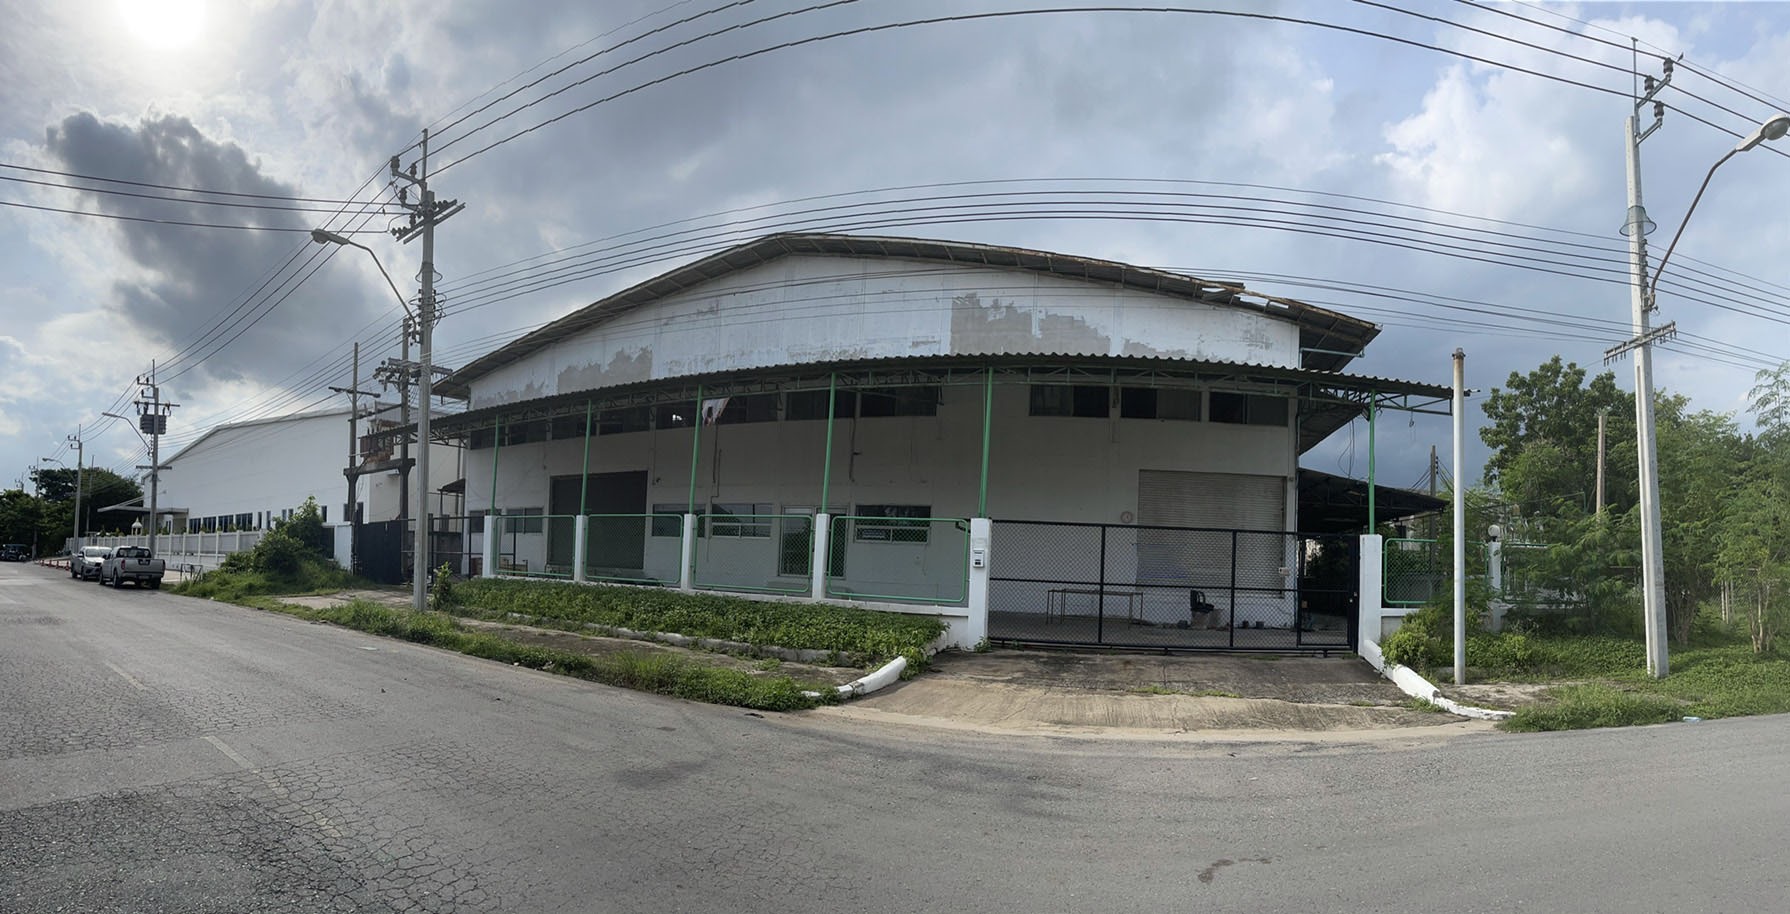 SaleFactory Factory Latkrabang Industrial Estate